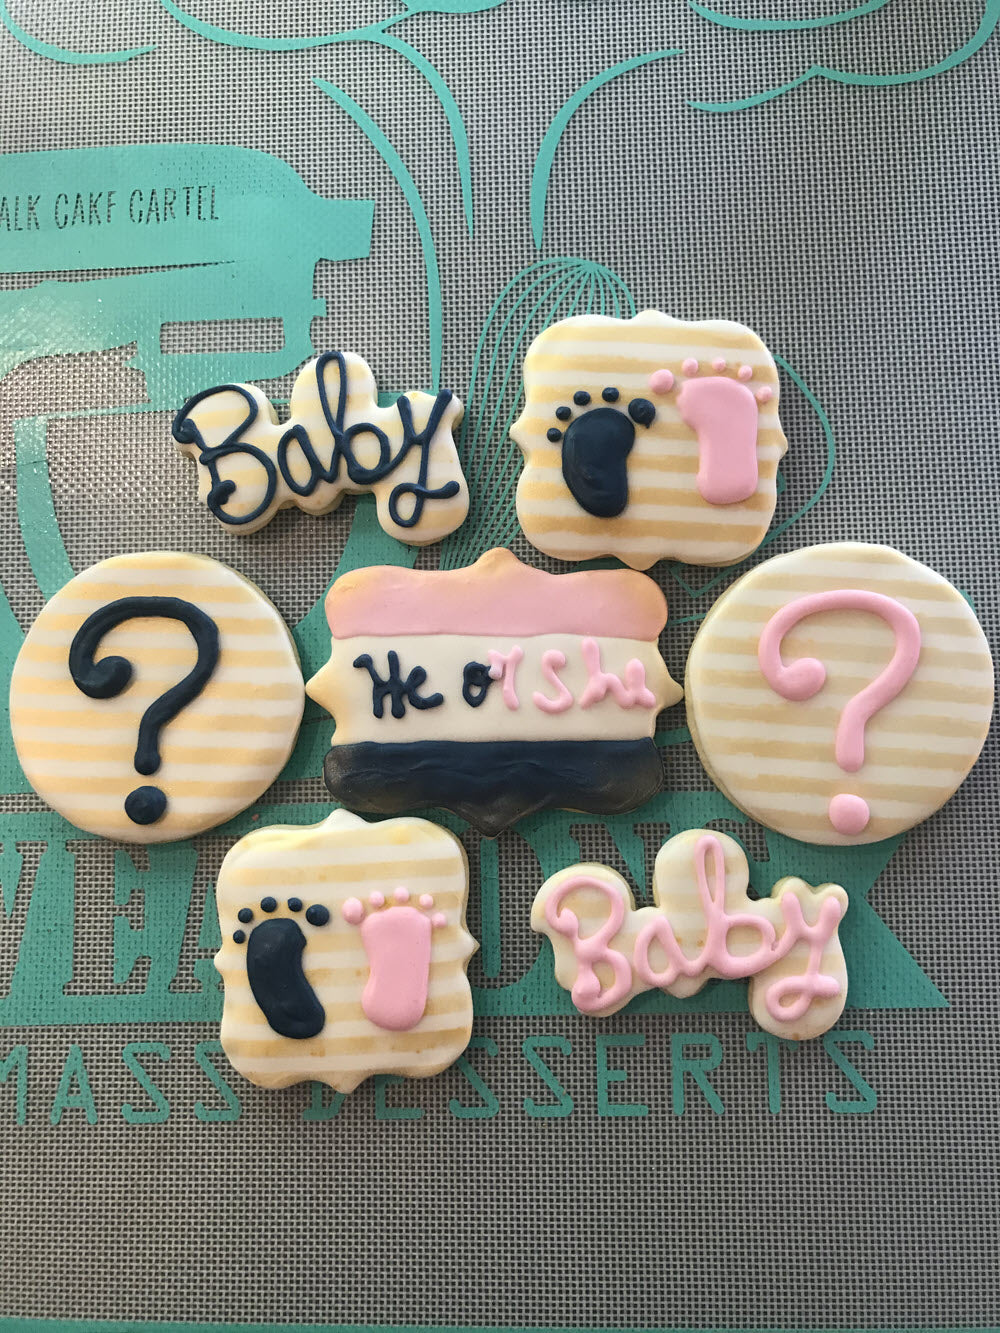 Boy or Girl Gender Reveal Cookies